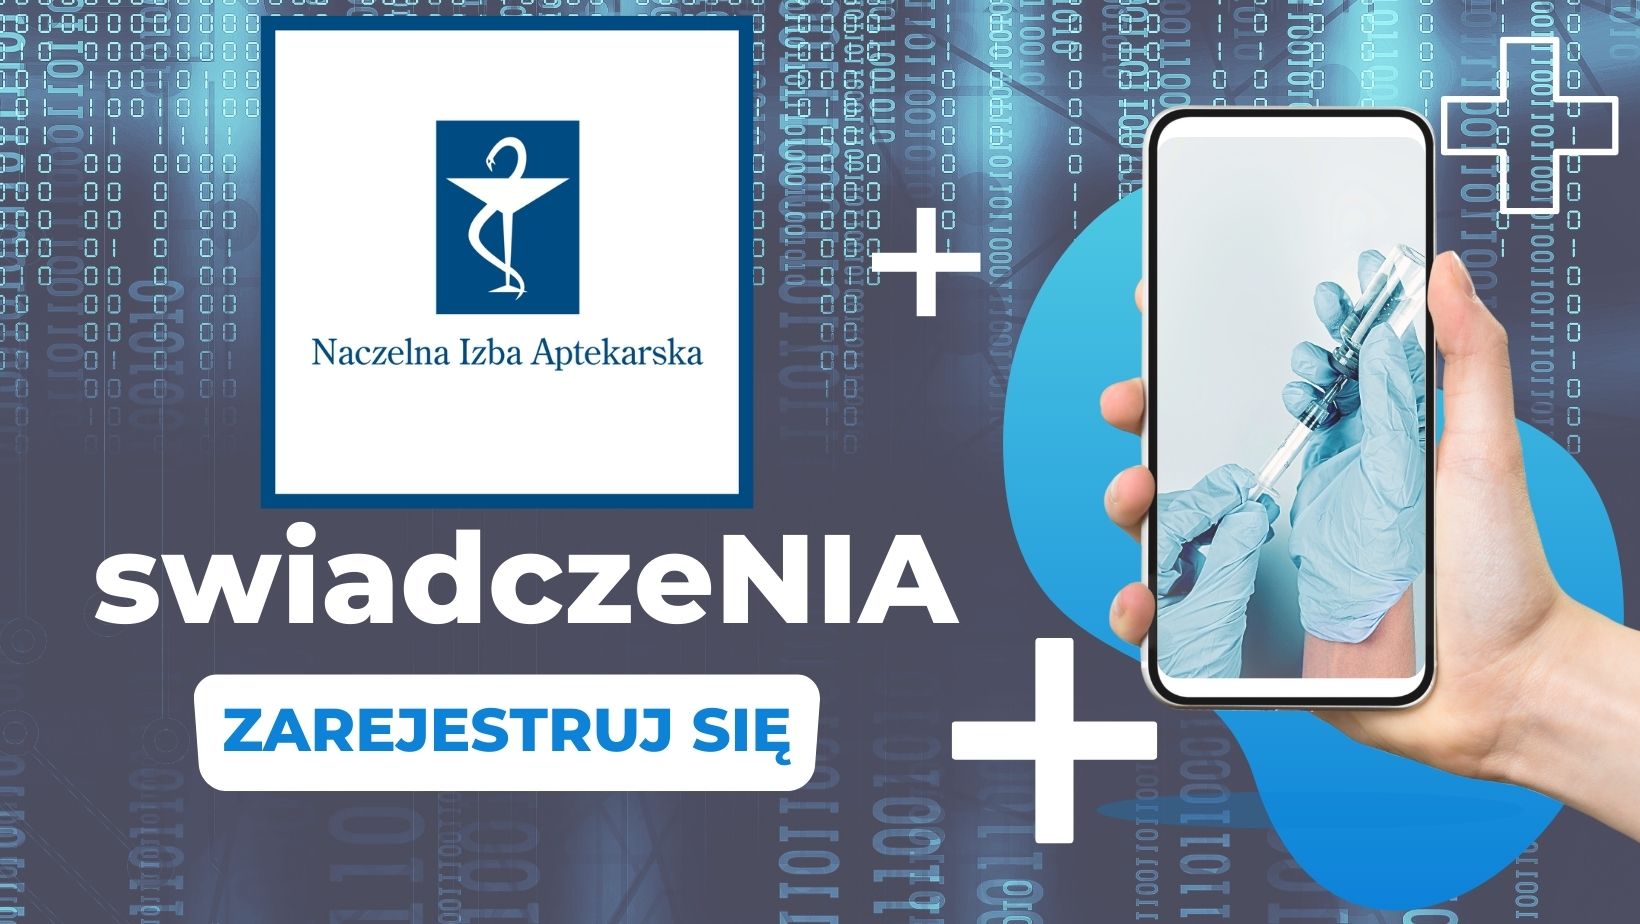 Read more about the article System rozliczania świadczeń “ŚwiadczeNIA”